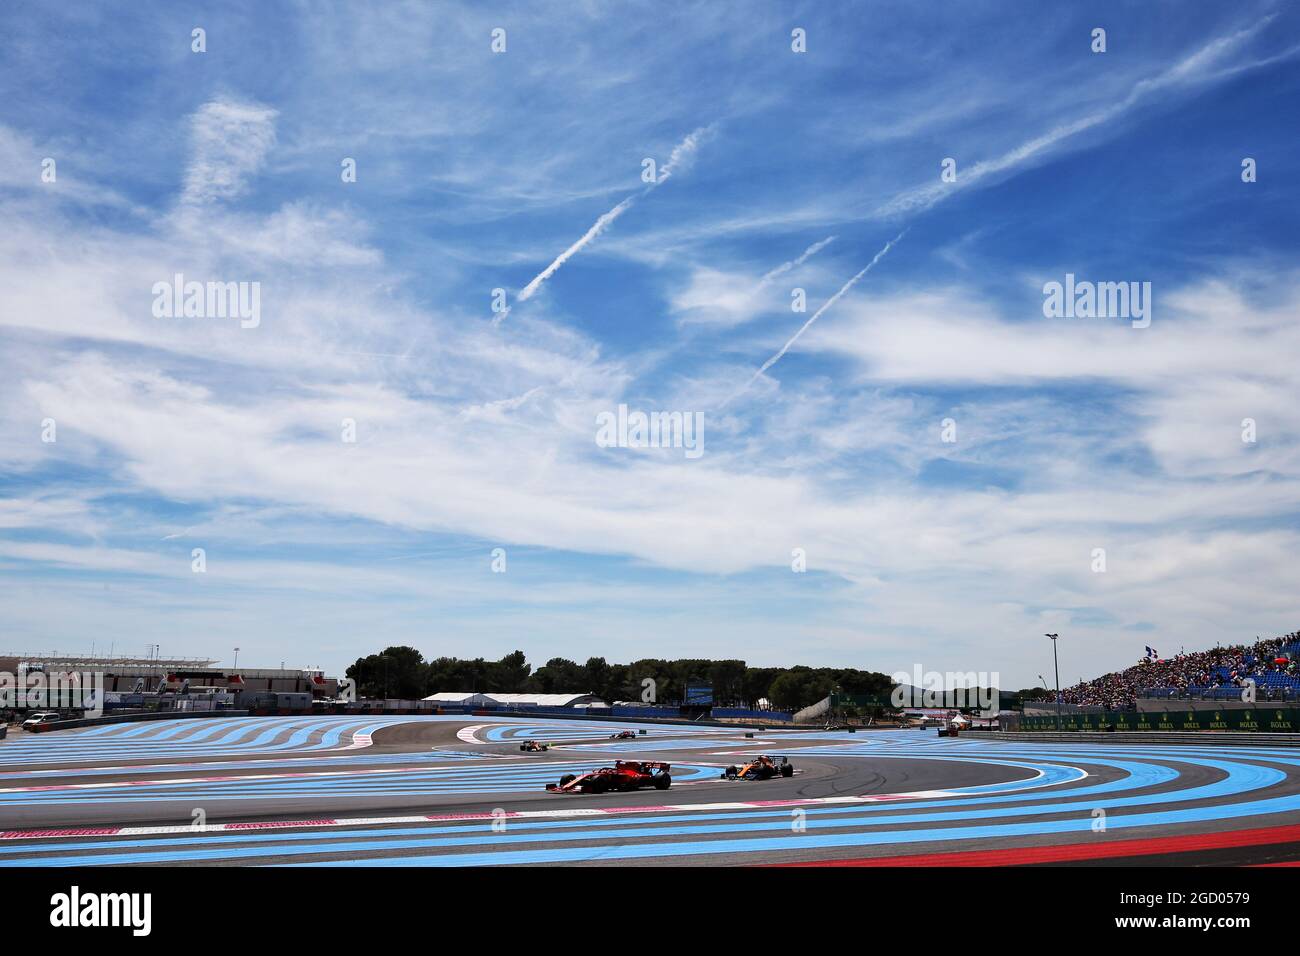 Sebastian Vettel (GER) Ferrari SF90. French Grand Prix, Sunday 23rd June 2019. Paul Ricard, France. Stock Photo